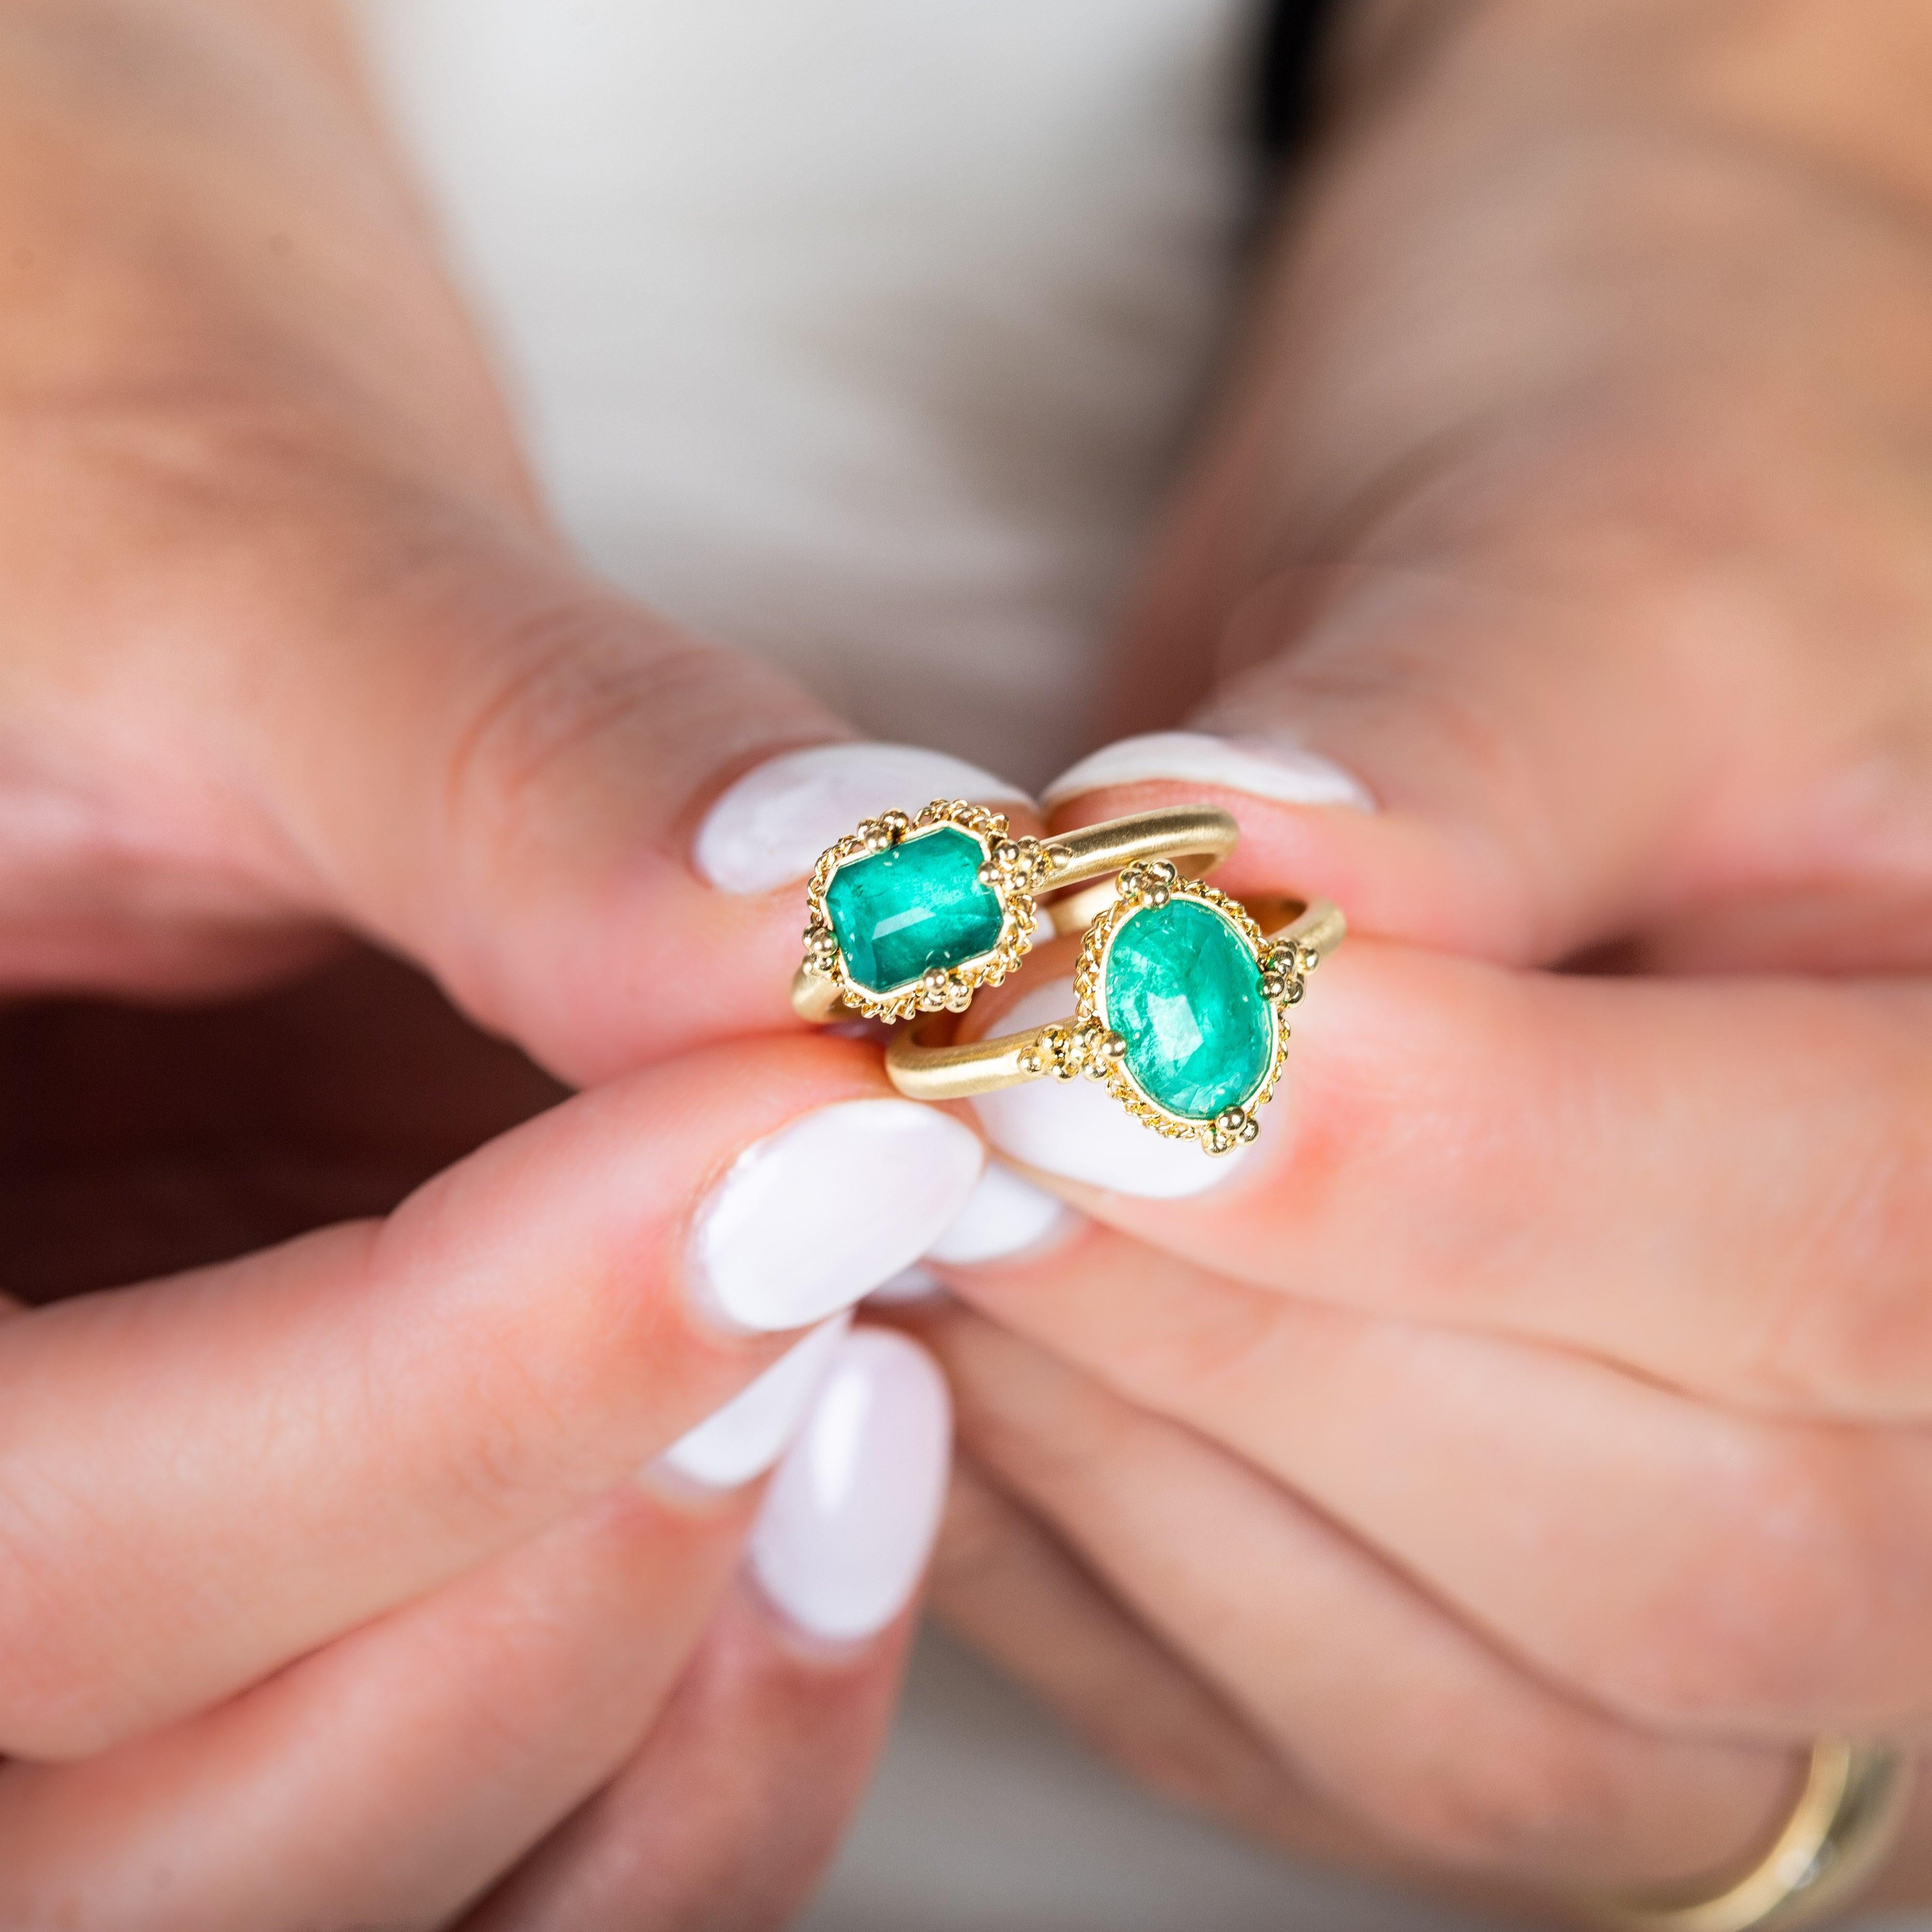 Mit seiner Kombination aus sattem, tiefem Grün und samtigem Gold verkörpert dieser Ring zurückhaltenden Luxus. Wir haben die natürliche Schönheit dieses Edelsteins gewürdigt, indem wir ihn in einen filigranen Rahmen aus schimmernder Goldkette und